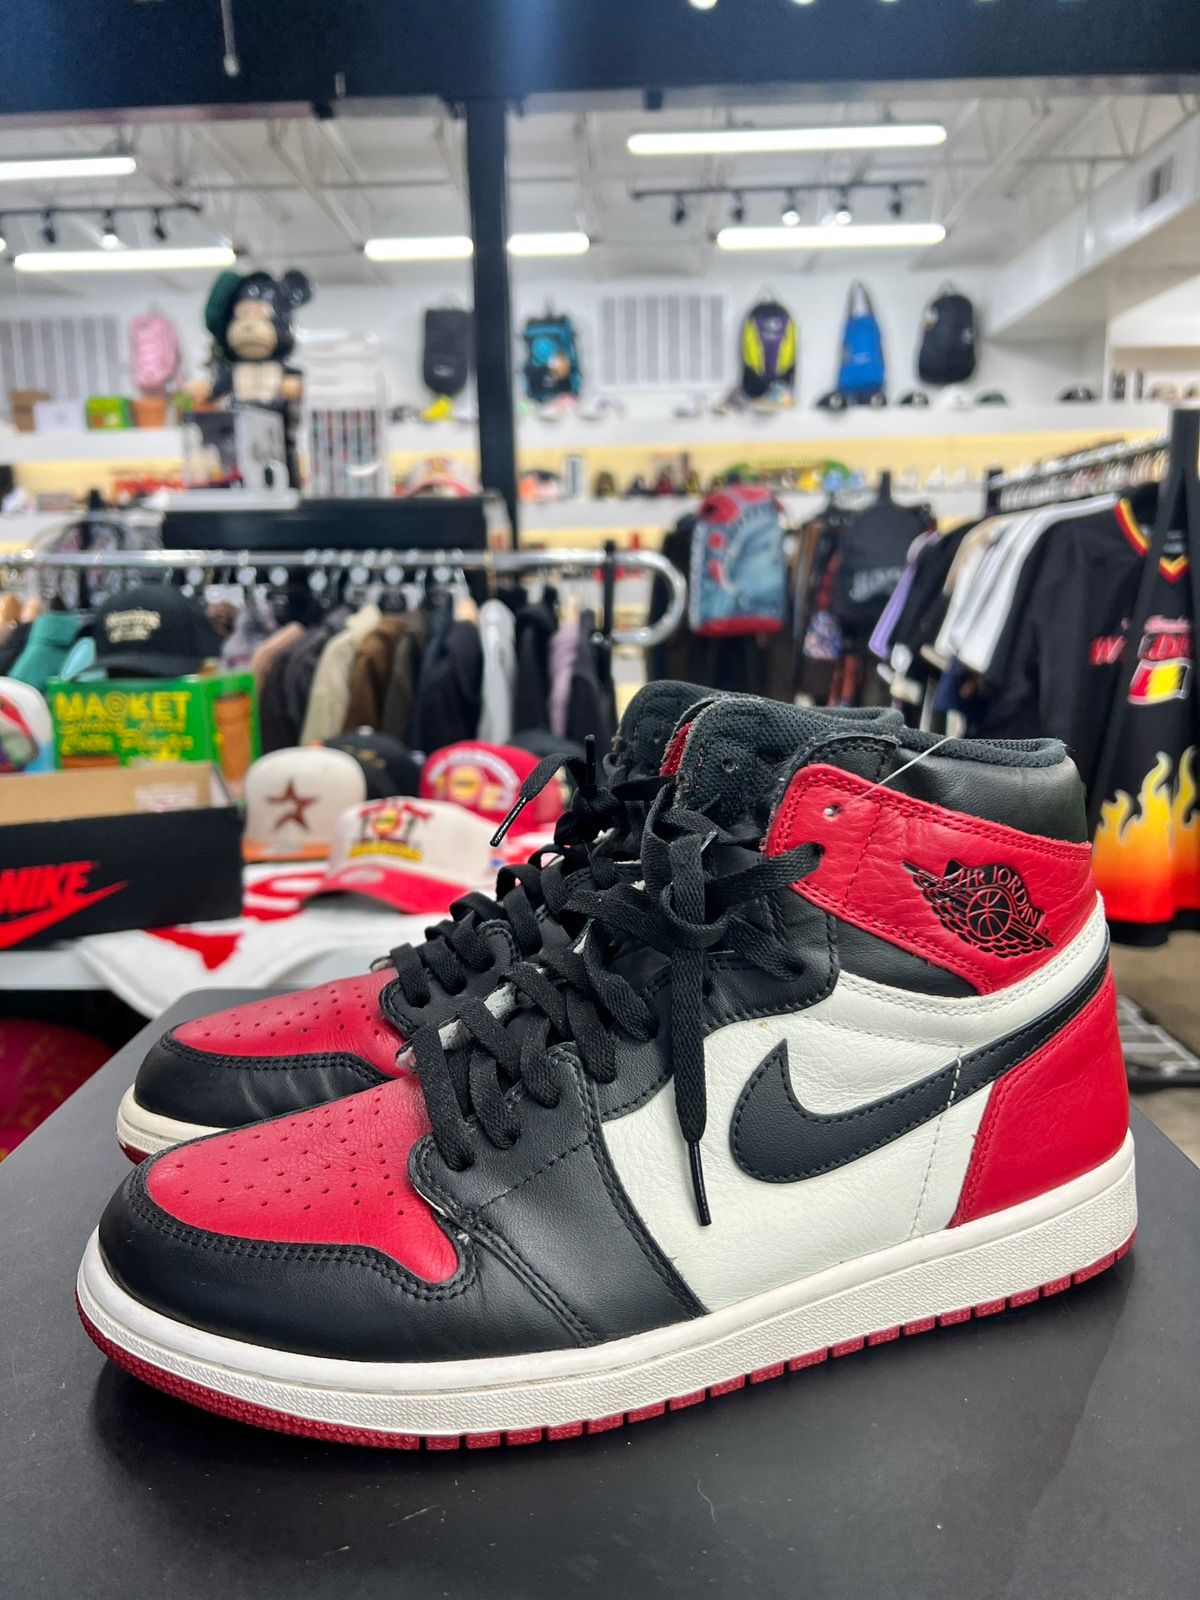 Pre-owned Jordan Nike Jordan 1 Bred Toe Sz. 10.5 Shoes In Red